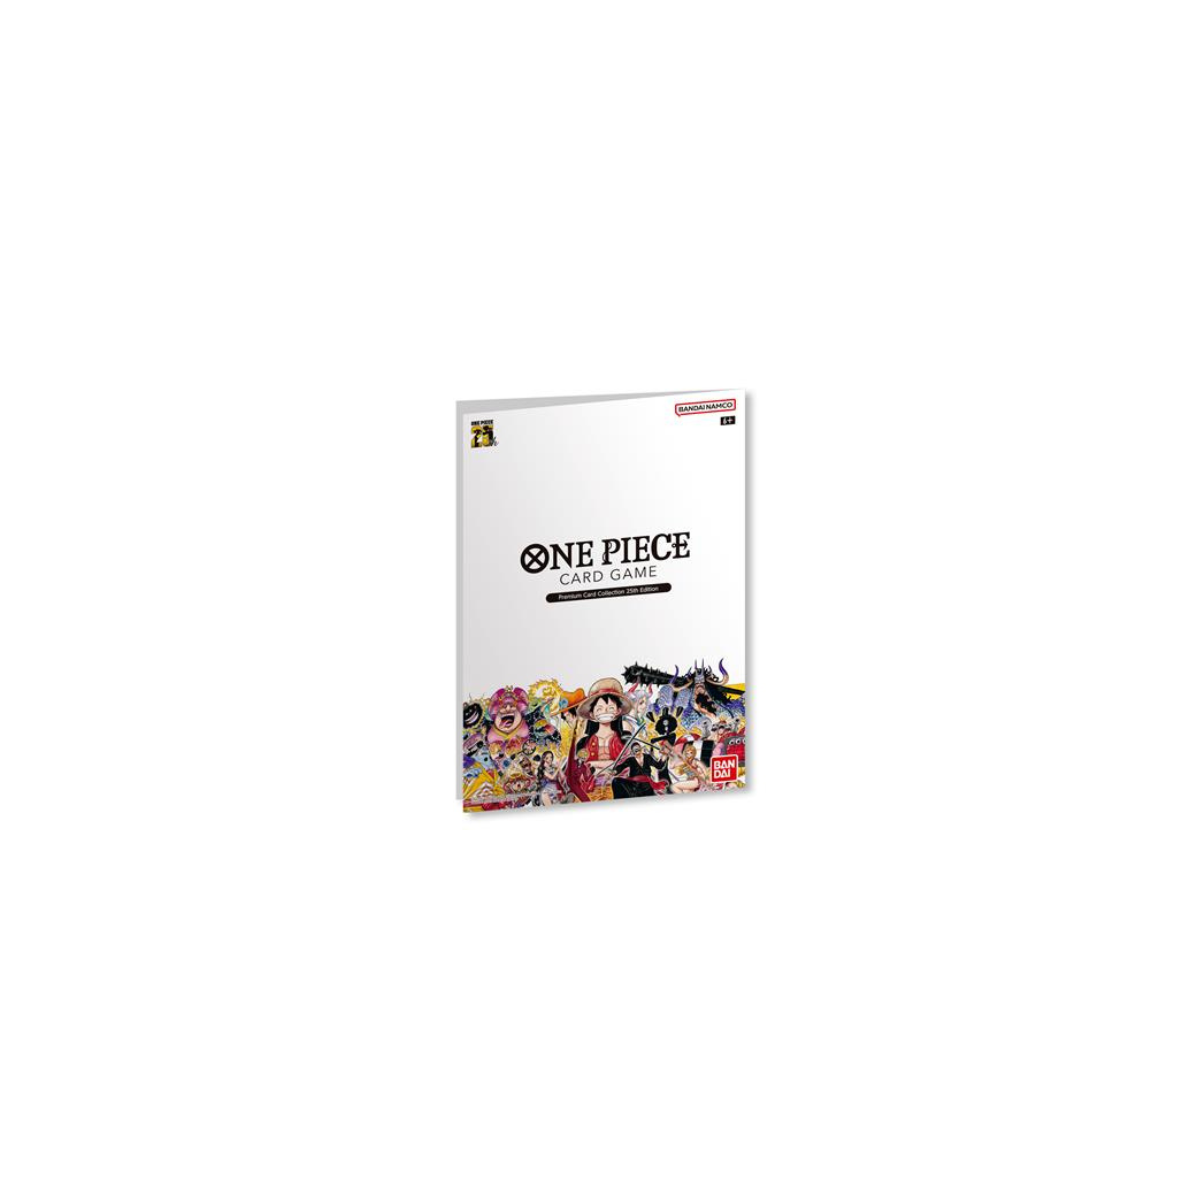 One Piece Card Game - Premium Card Collection - 25th Edition (englisch) - Erlebe die Abenteuer der Strohhutpiraten